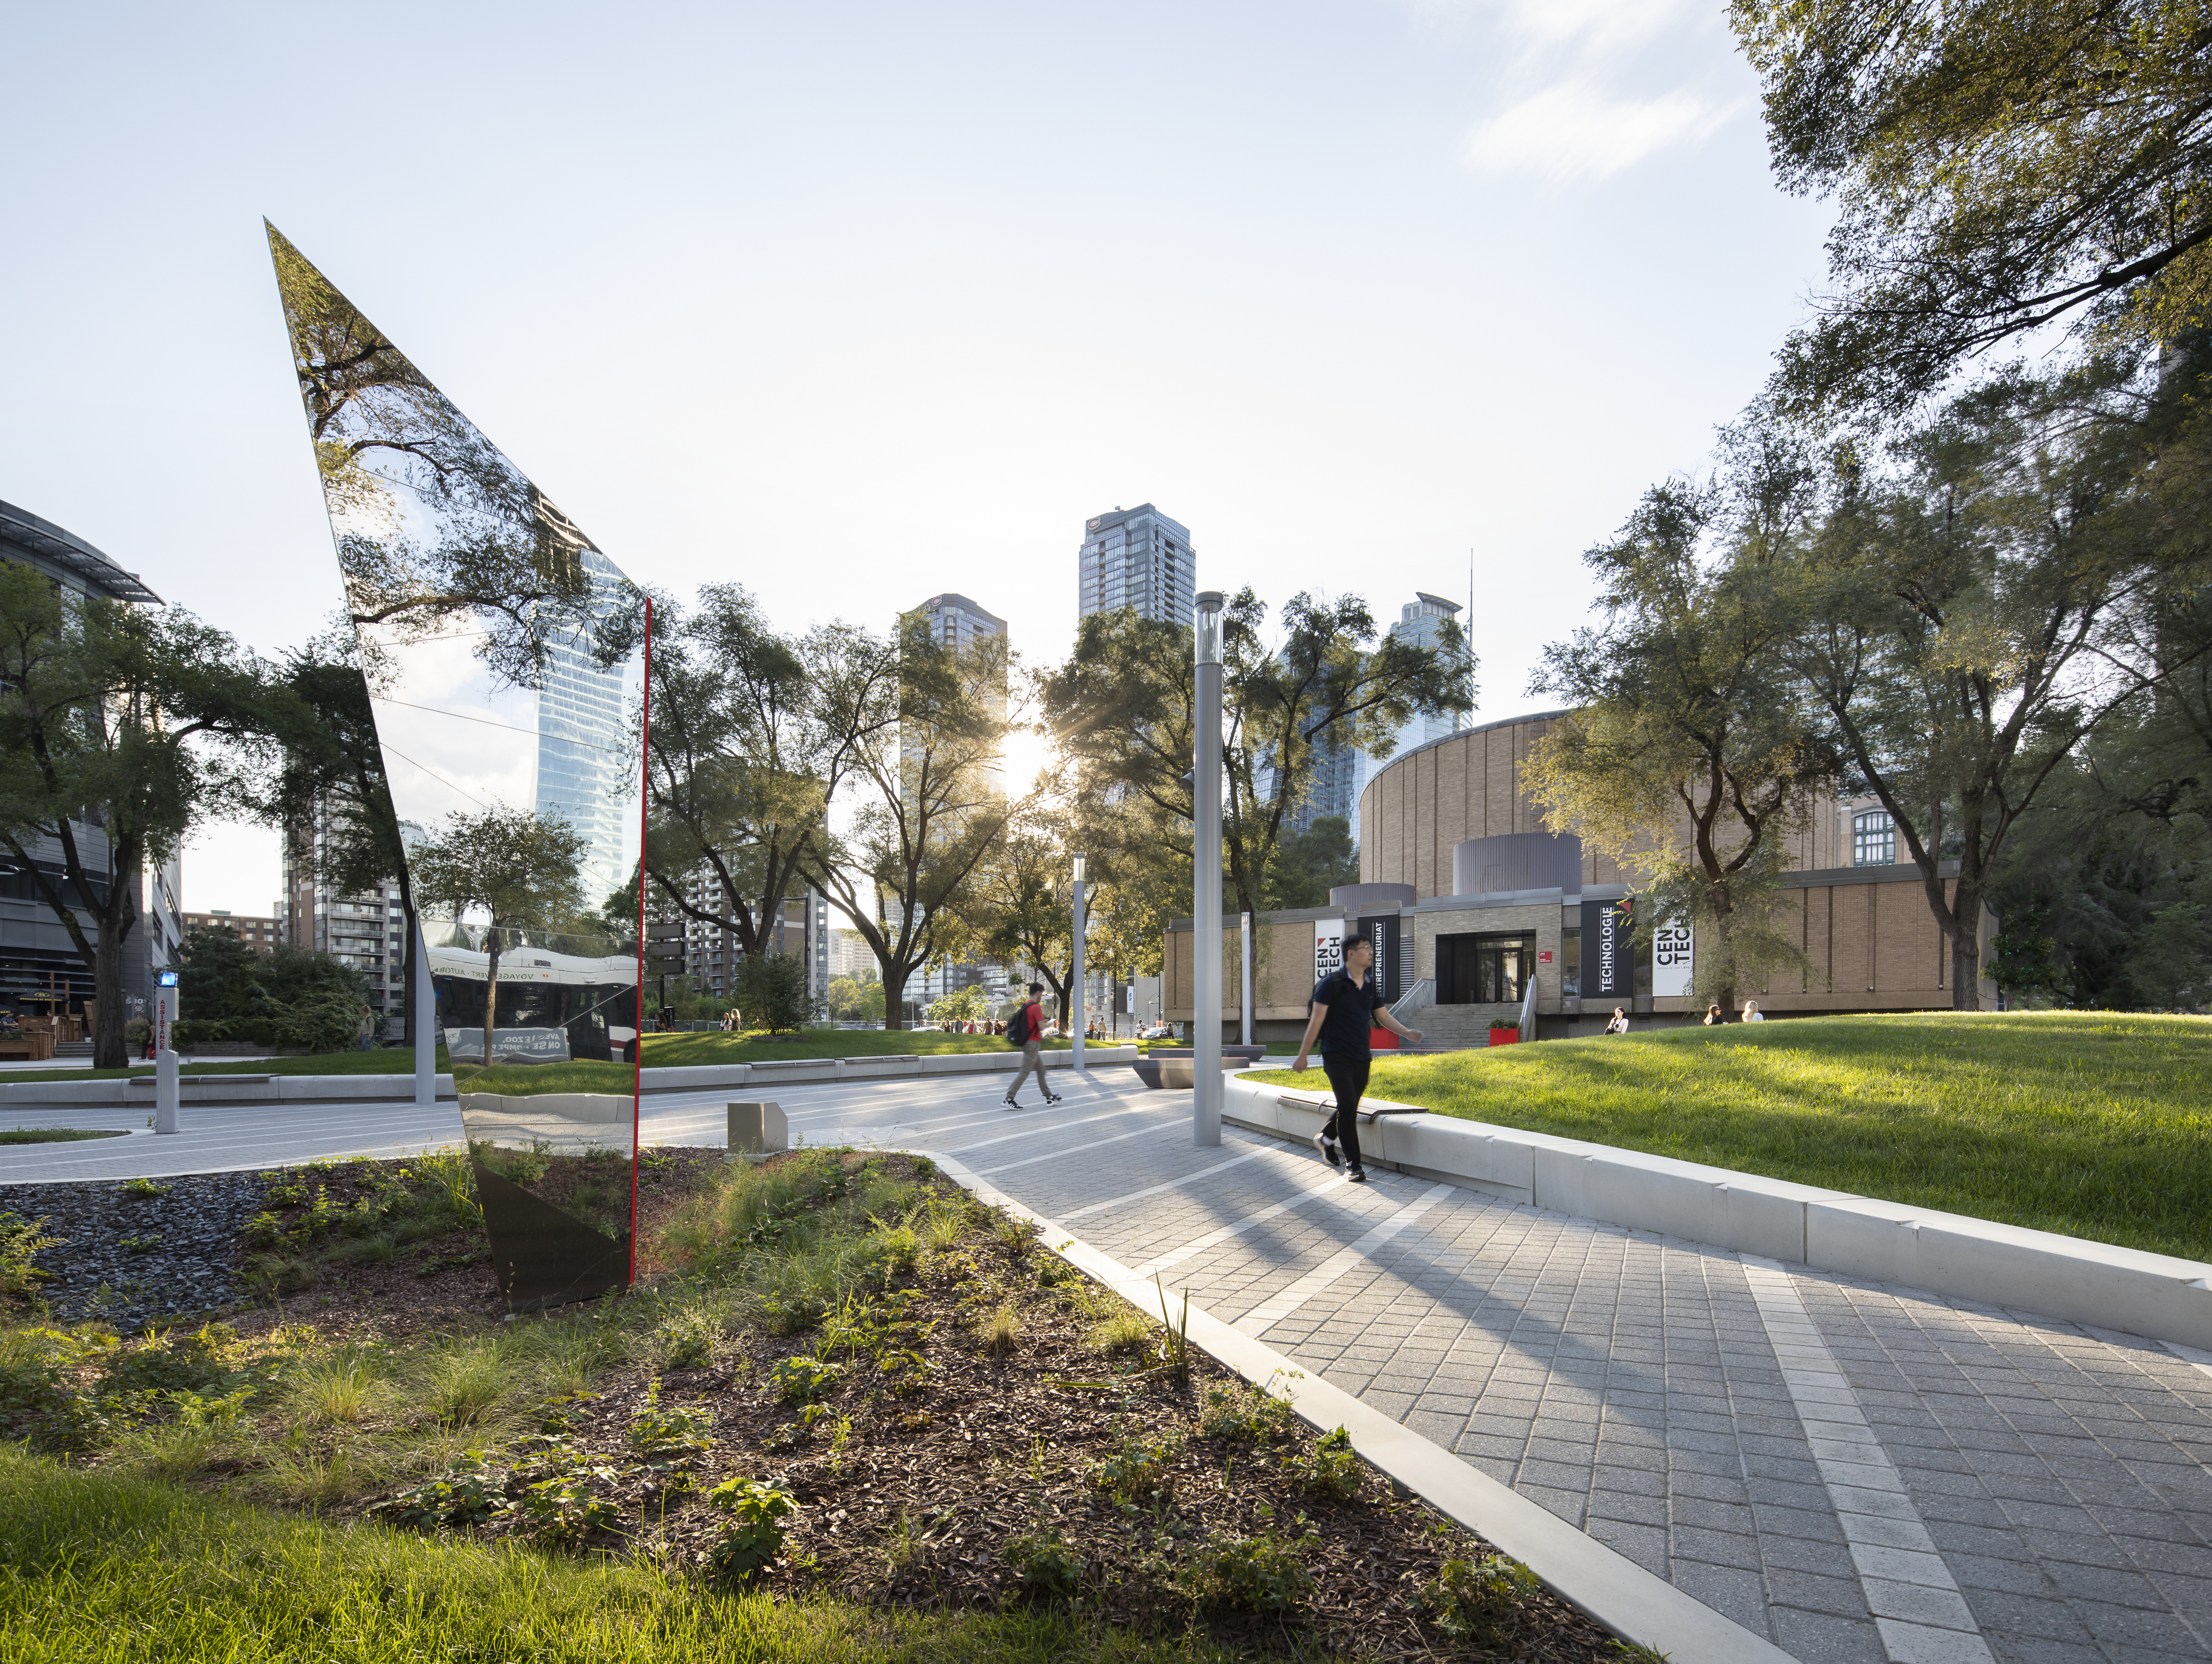 Campus moderne avec espaces verts, étudiants et installations urbaines.